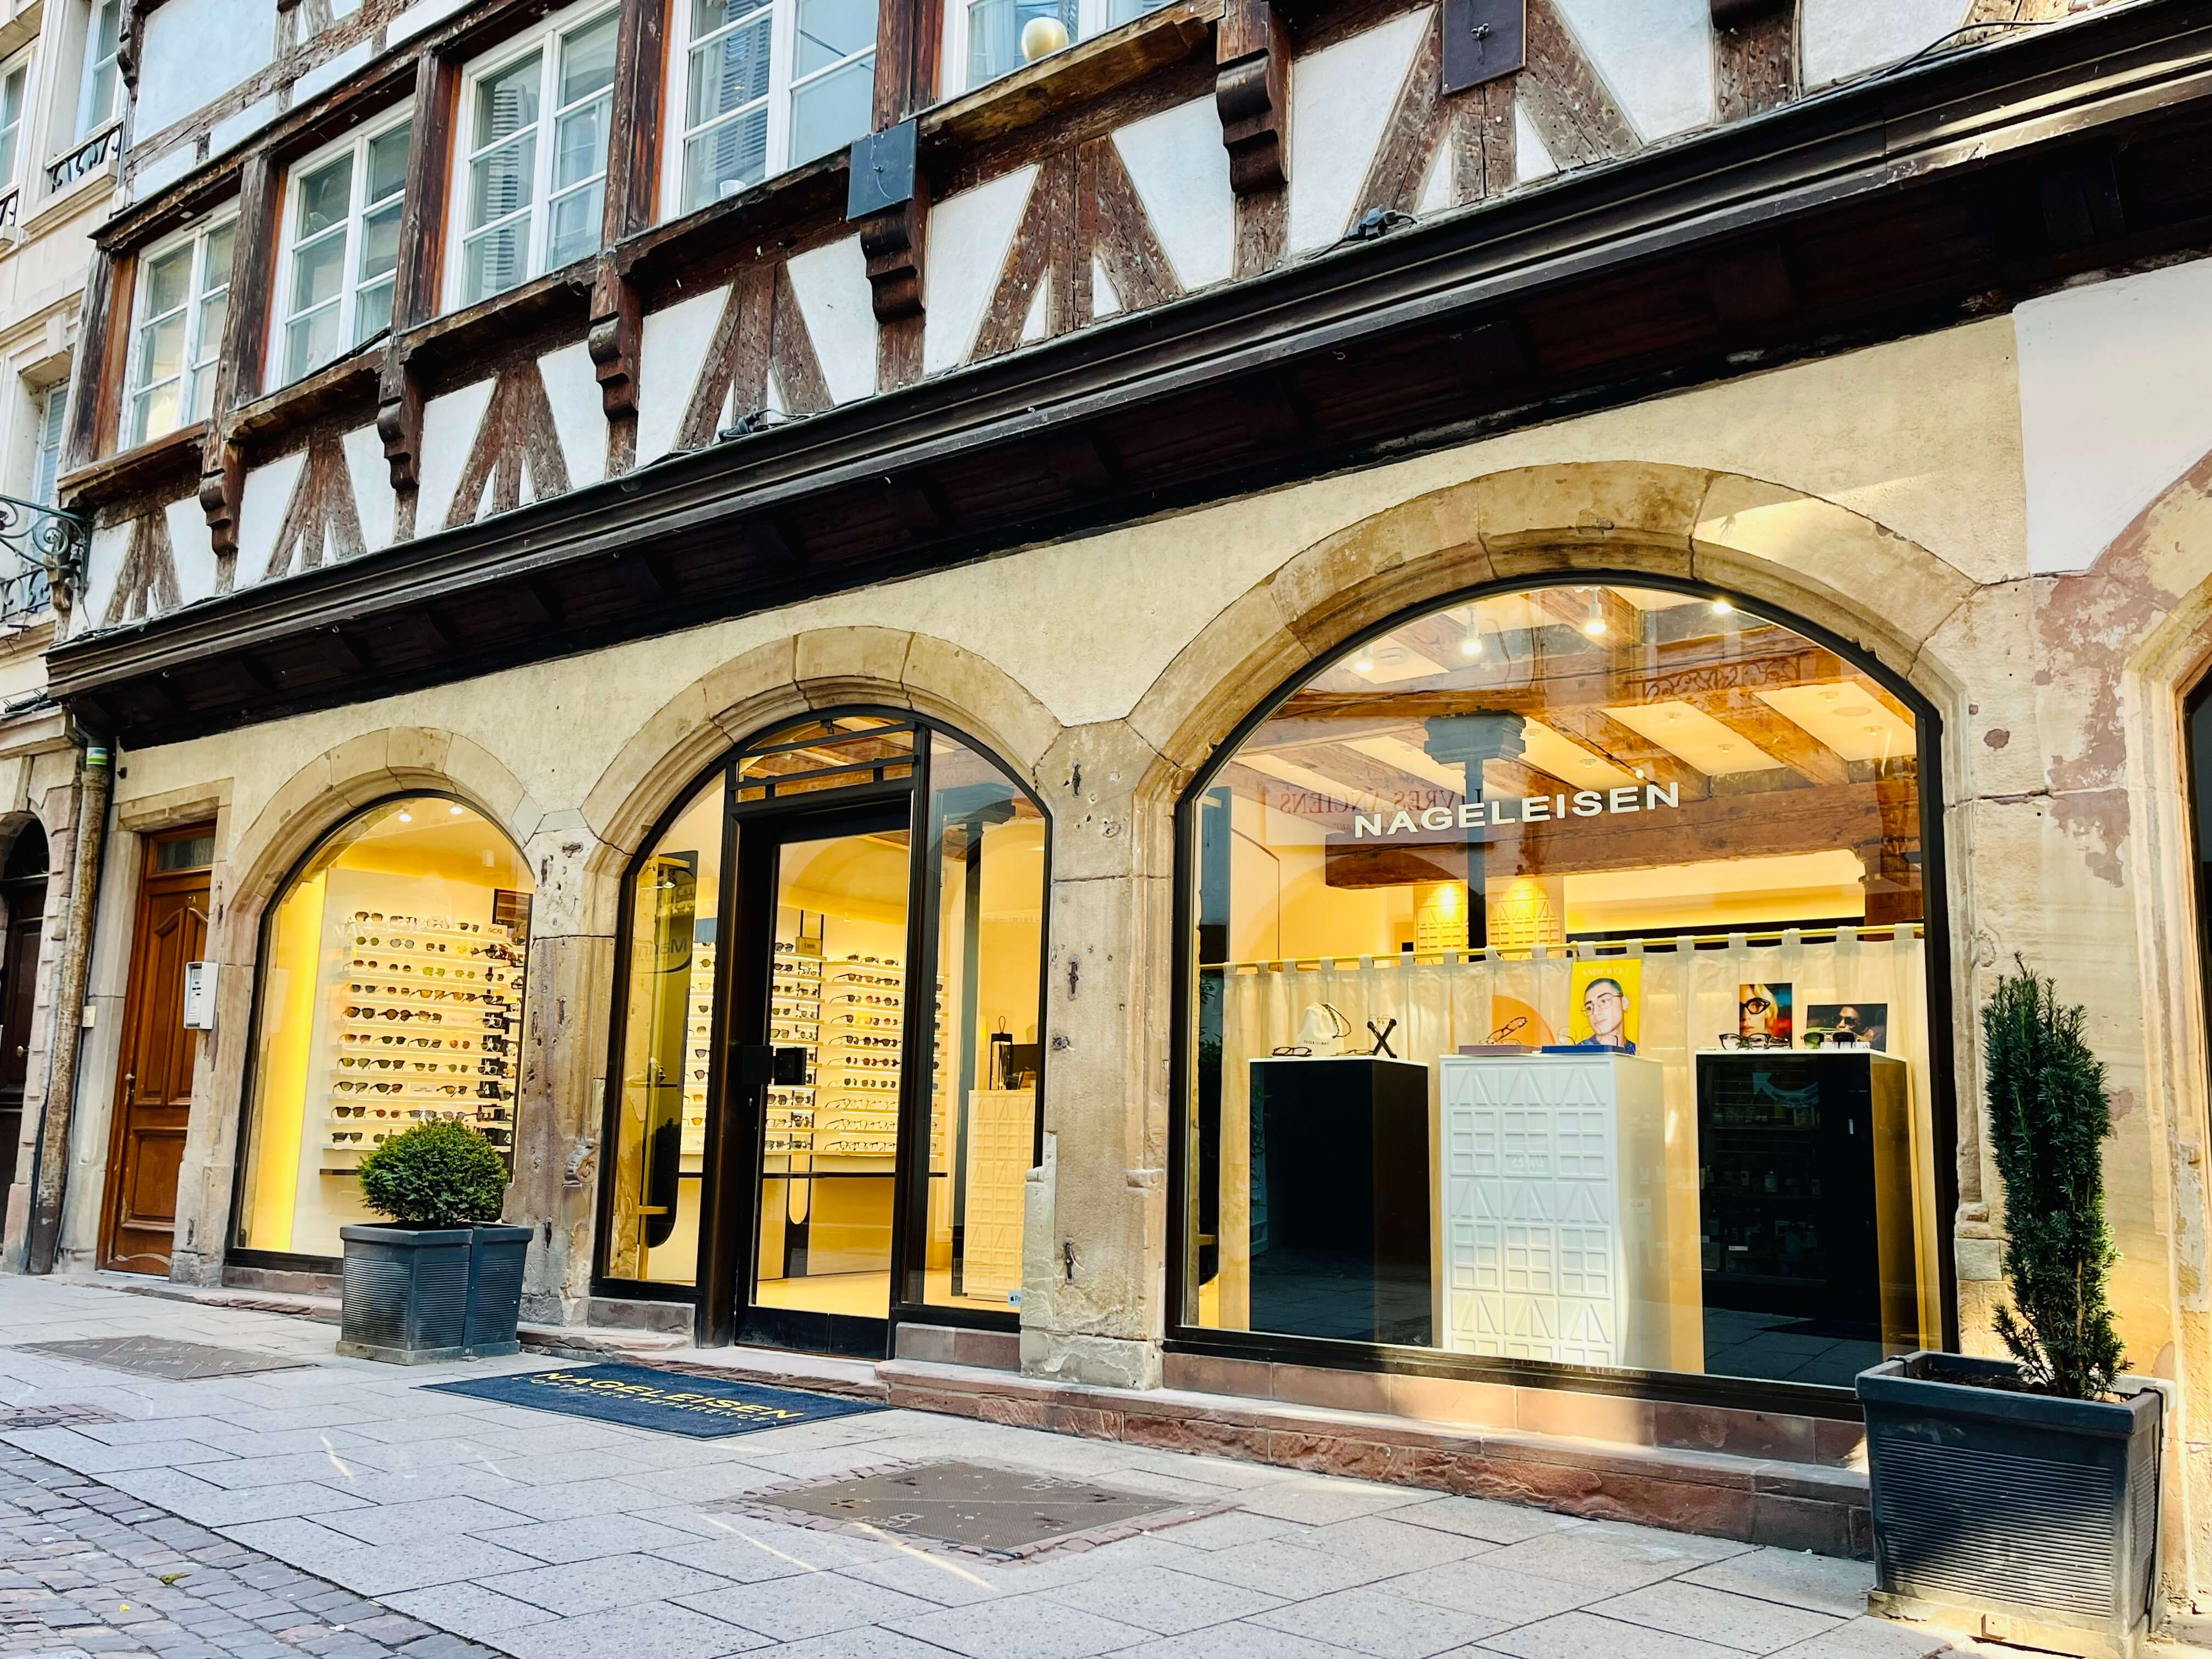 Boutique Nageleisen Strasbourg